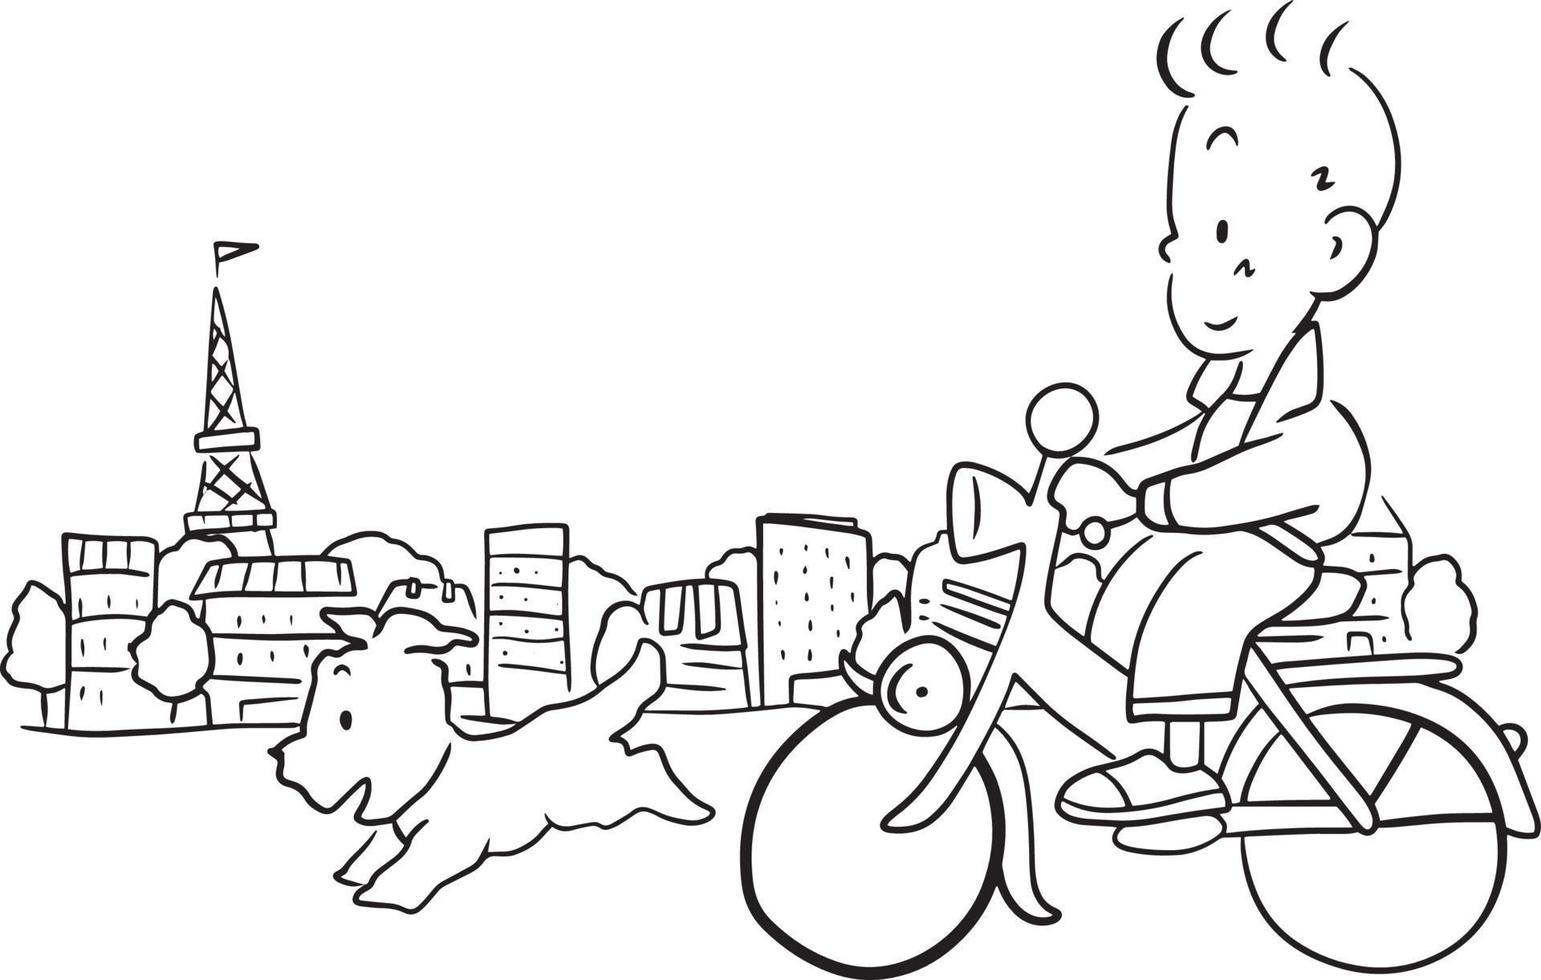 dessin animé garçon cyclisme chien fonctionnement griffonnage kawaii anime coloration page mignonne illustration clipart personnage chibi manga bande dessinée dessin ligne art gratuit Télécharger vecteur